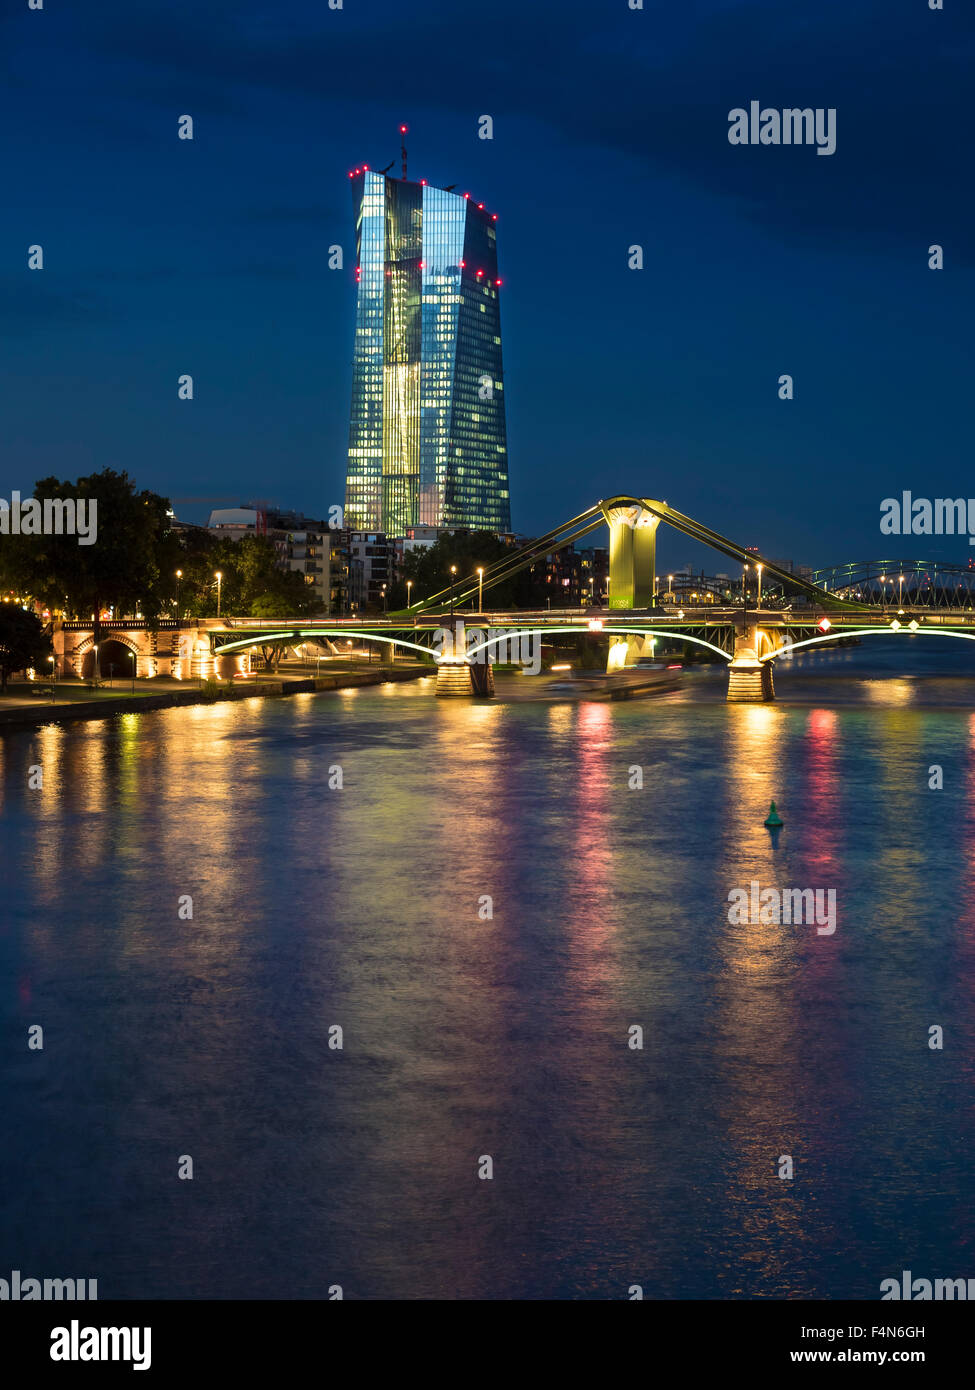 Germania, Francoforte, fiume Main con la Banca centrale europea, la BCE, la sera Foto Stock